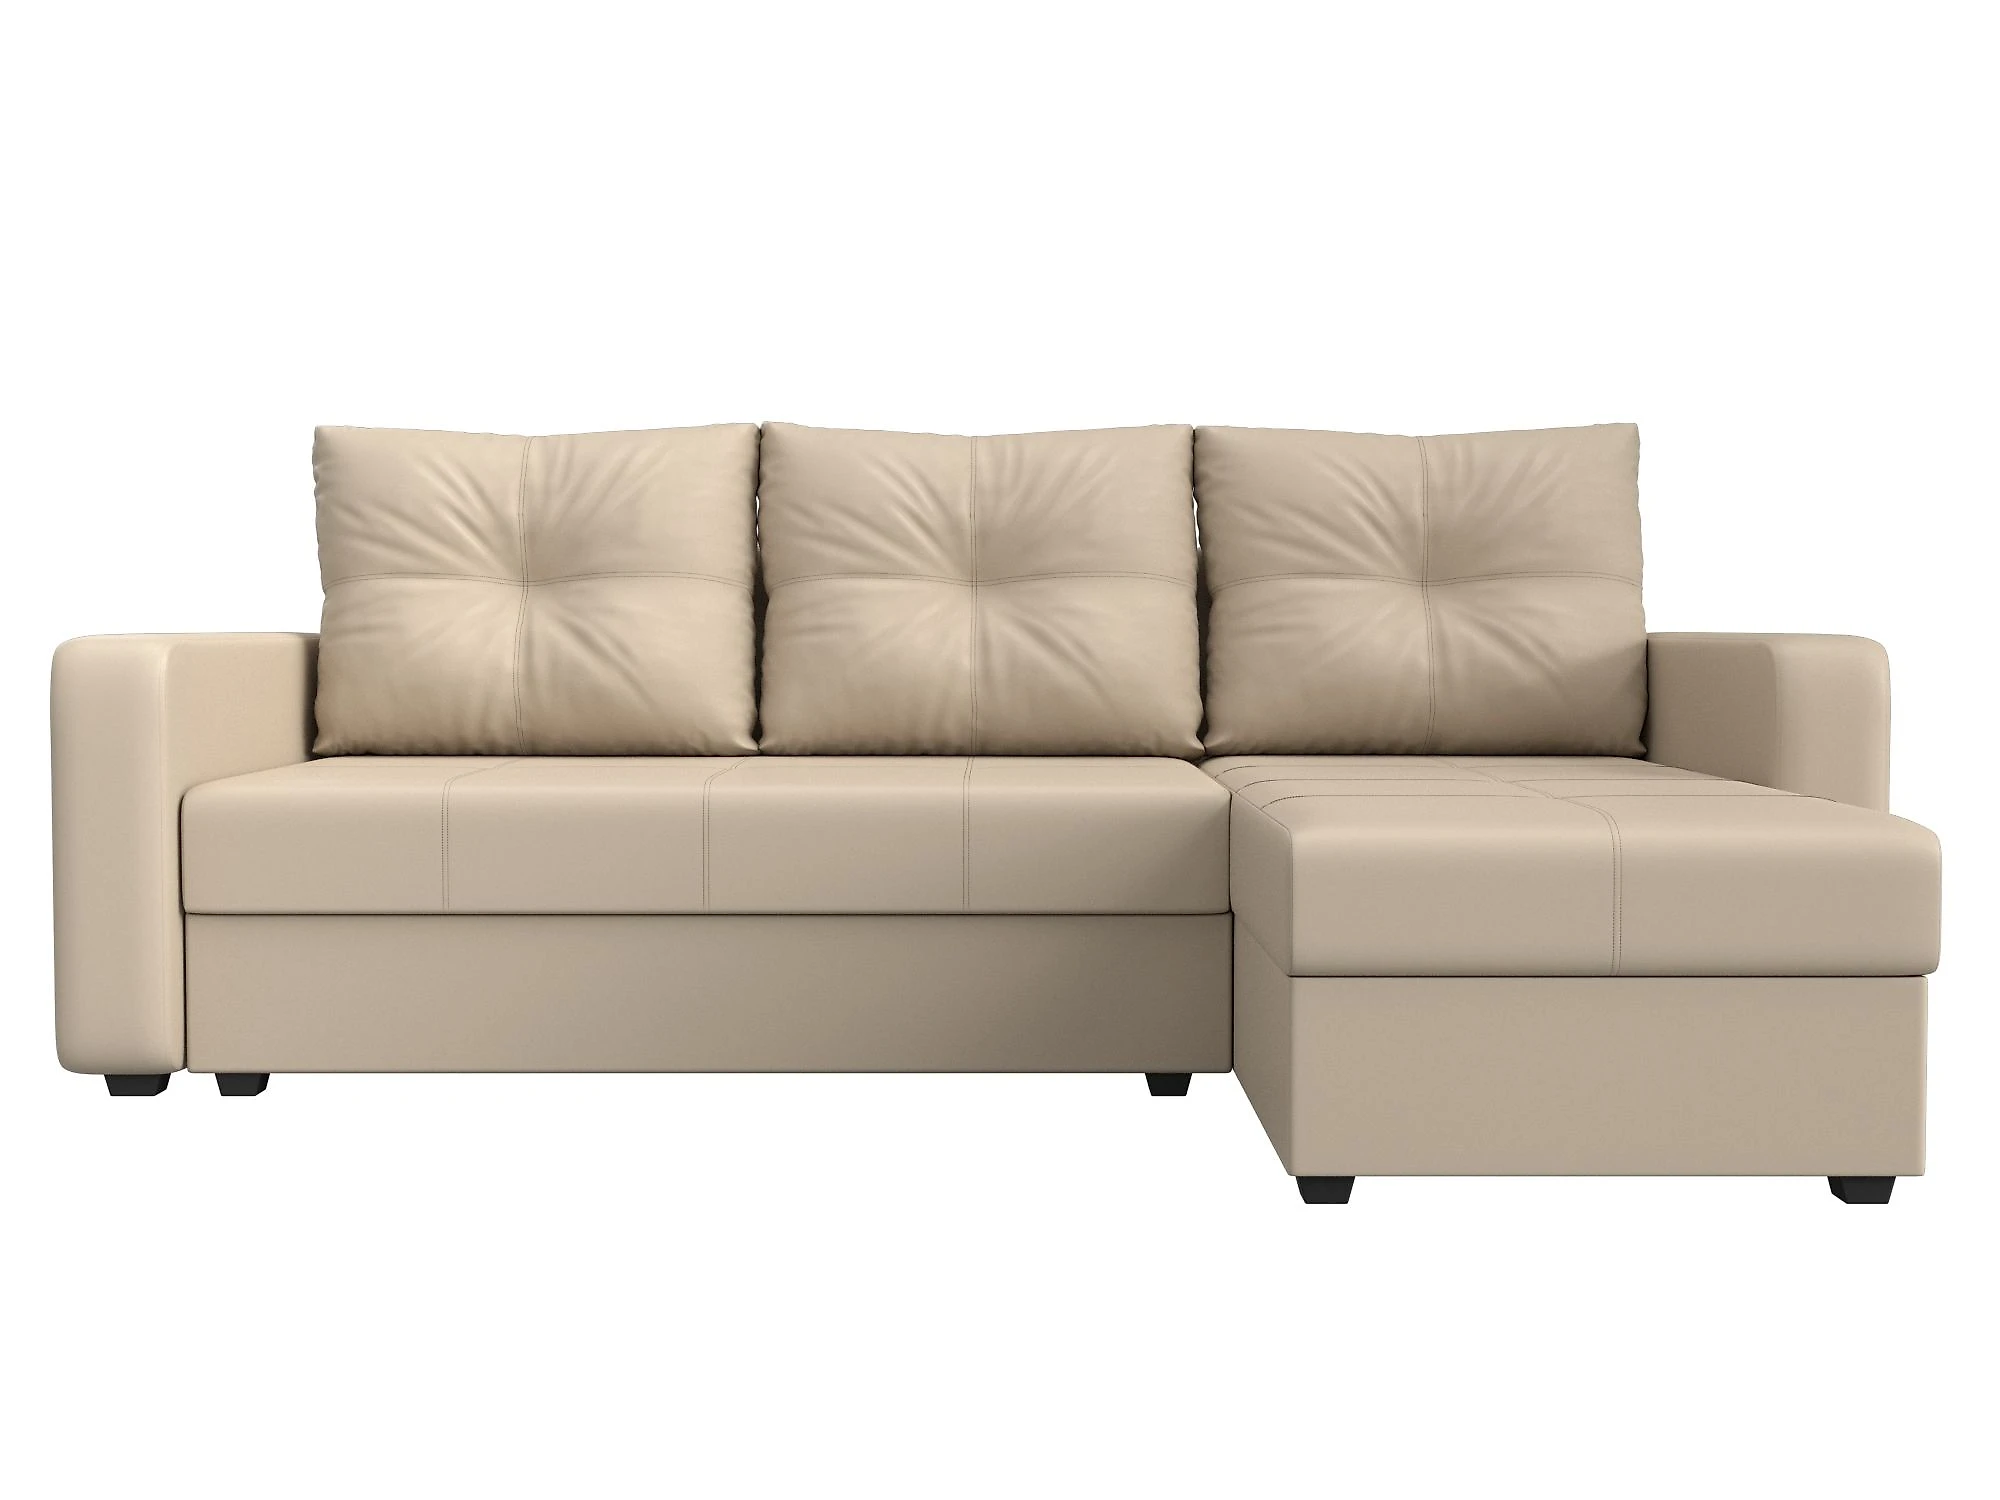  кожаный диван еврокнижка Ливерпуль Лайт Дизайн 12